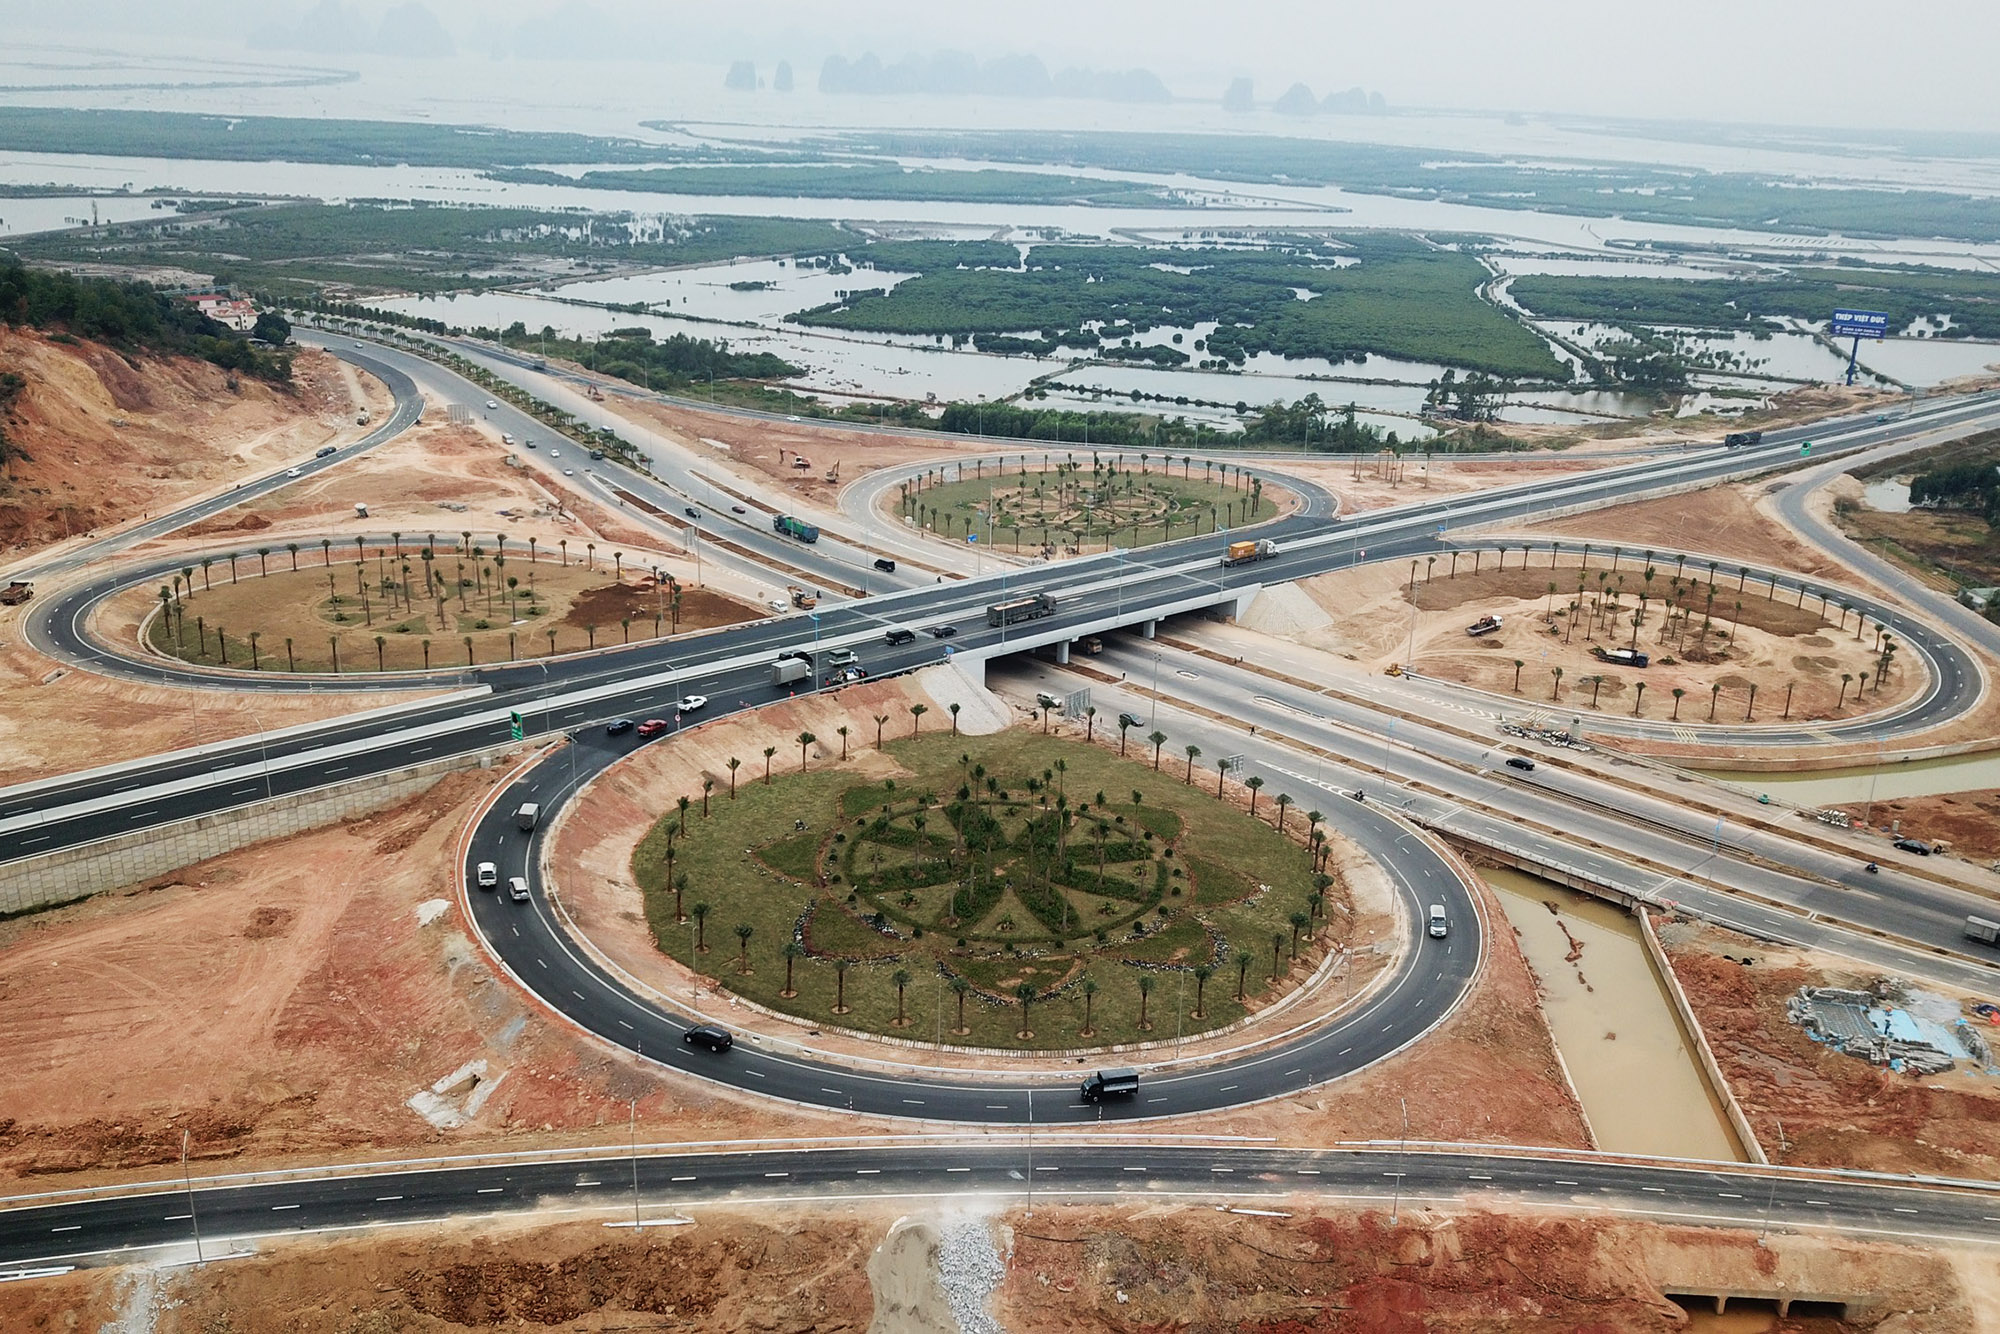 Núi giao Minh Khai giữa 2 tuyến cao tốc Hạ Long - Hải Phòng và Hạ Long - Vân Đồn với QL18 dự kiến hoàn thành vào đầu tháng 1/2021.